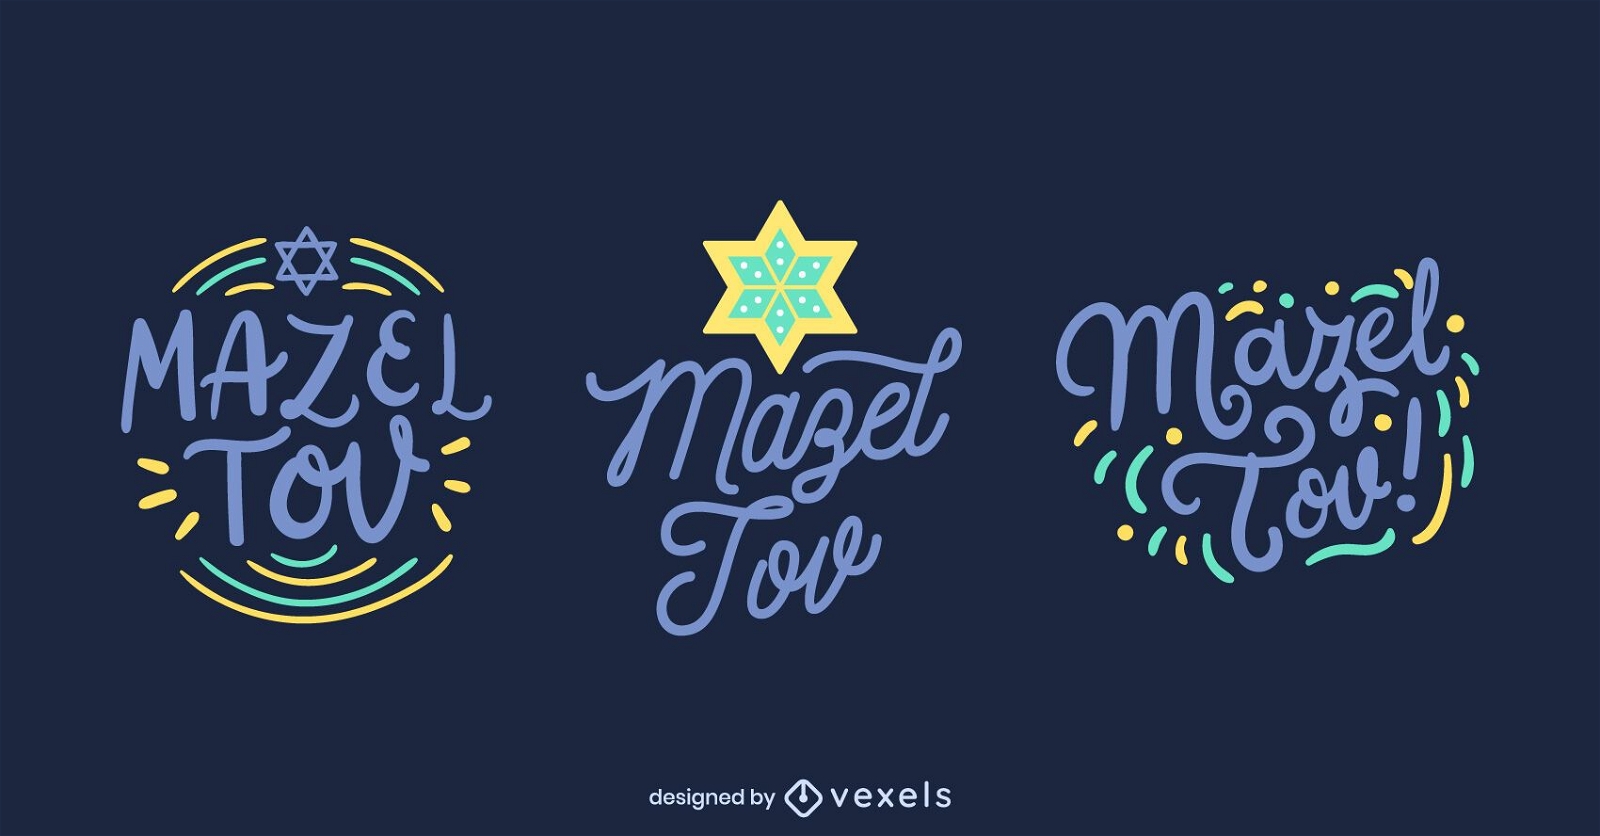 Mazel tov lettering set